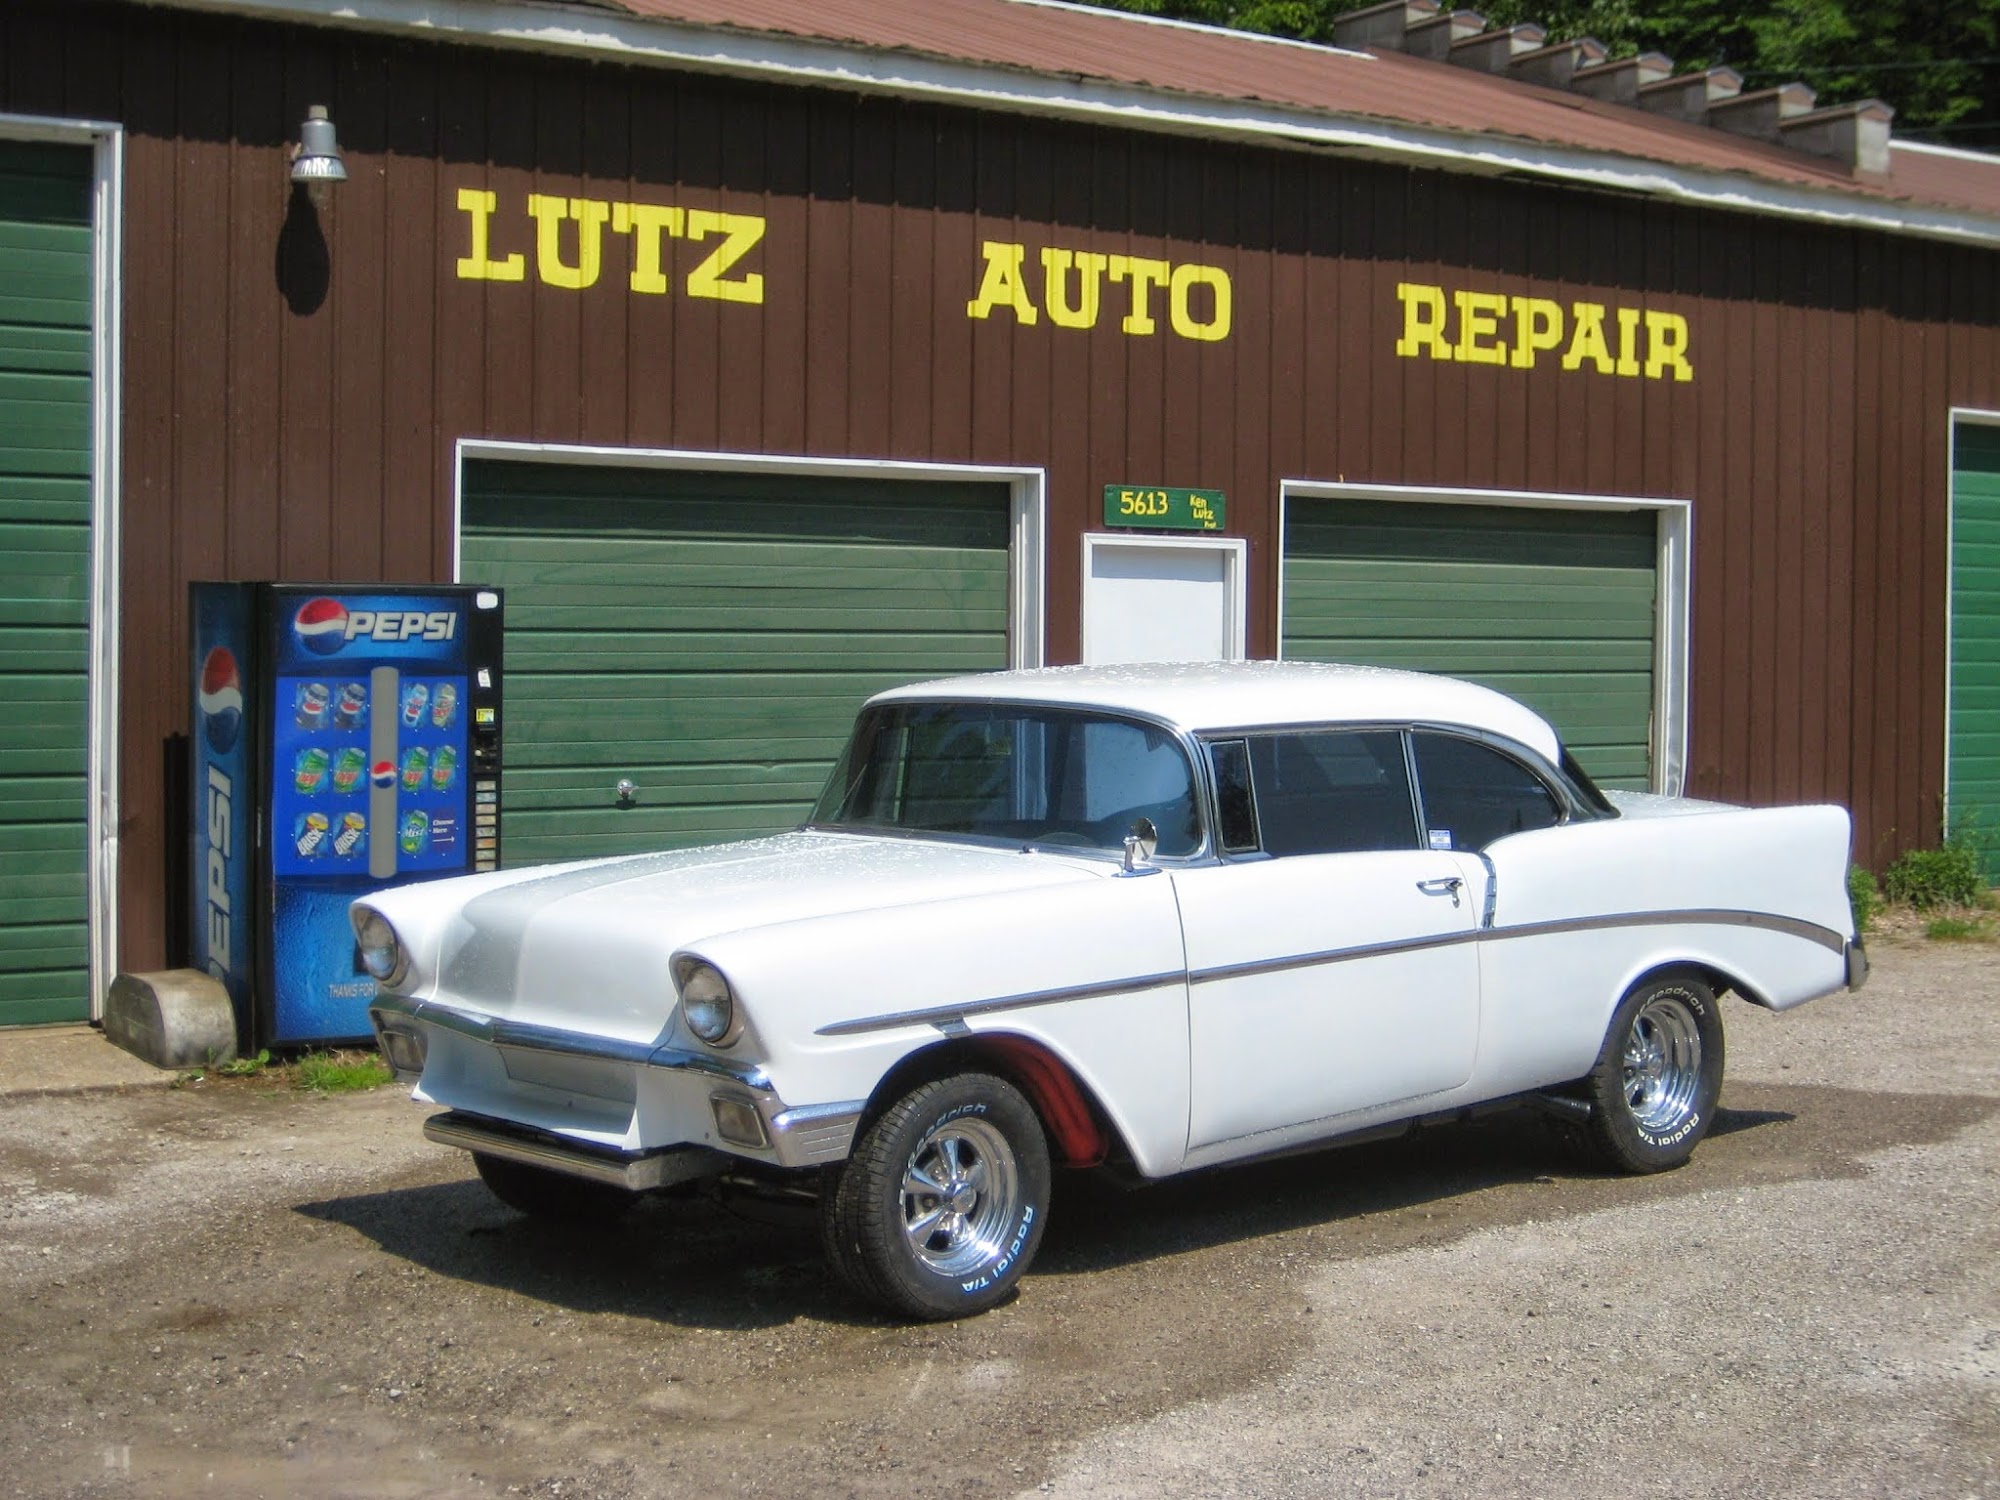 Lutz Auto Repair